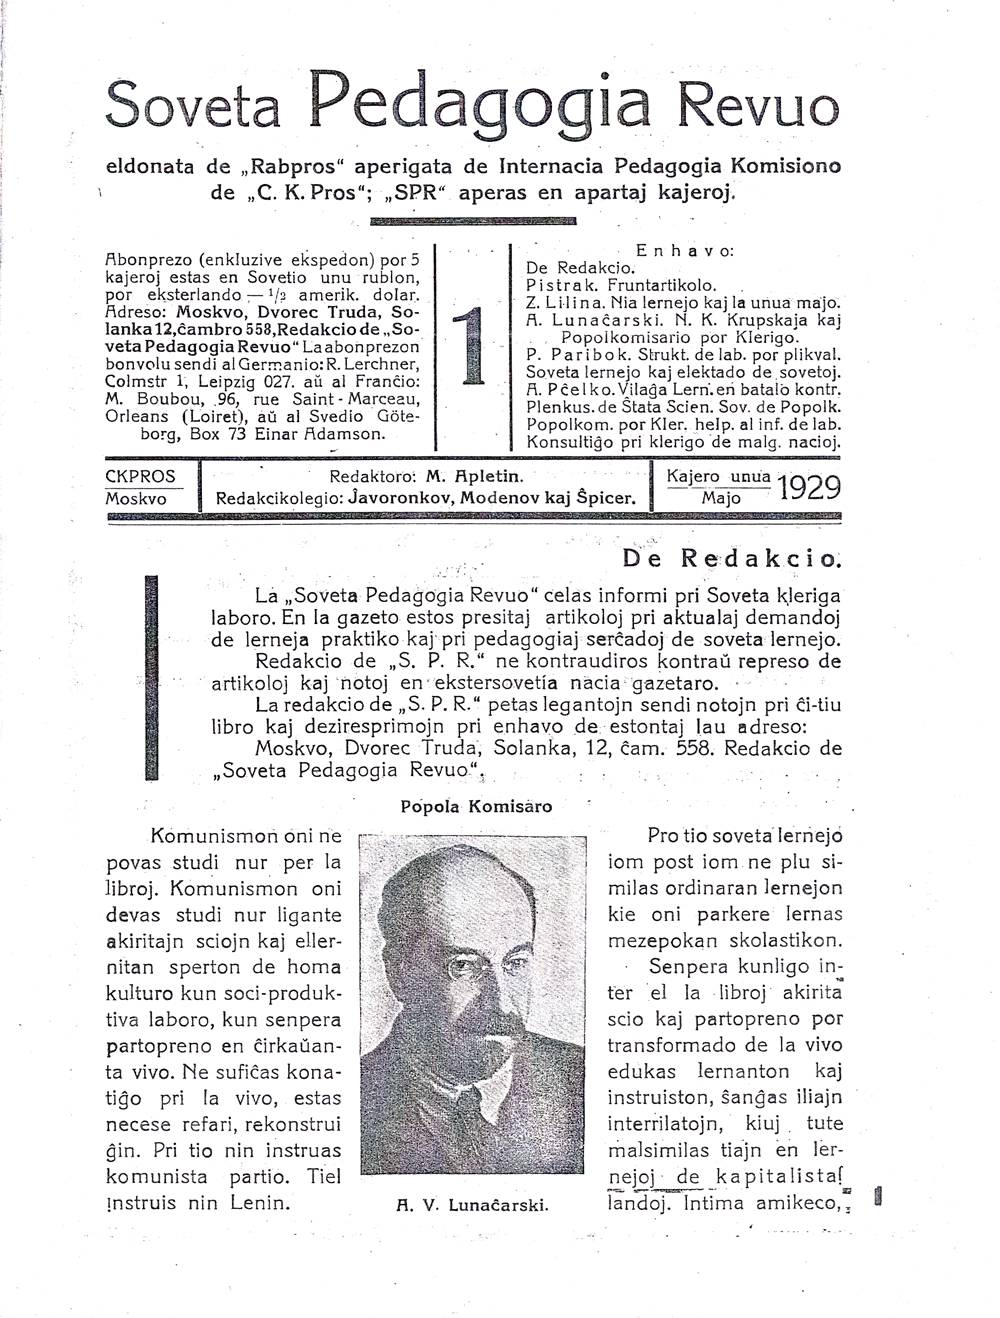 Титульный лист эсперантского журнала советских просвещенцев «Soveta Pedagogia Revuo» с портретом А. В. Луначарского